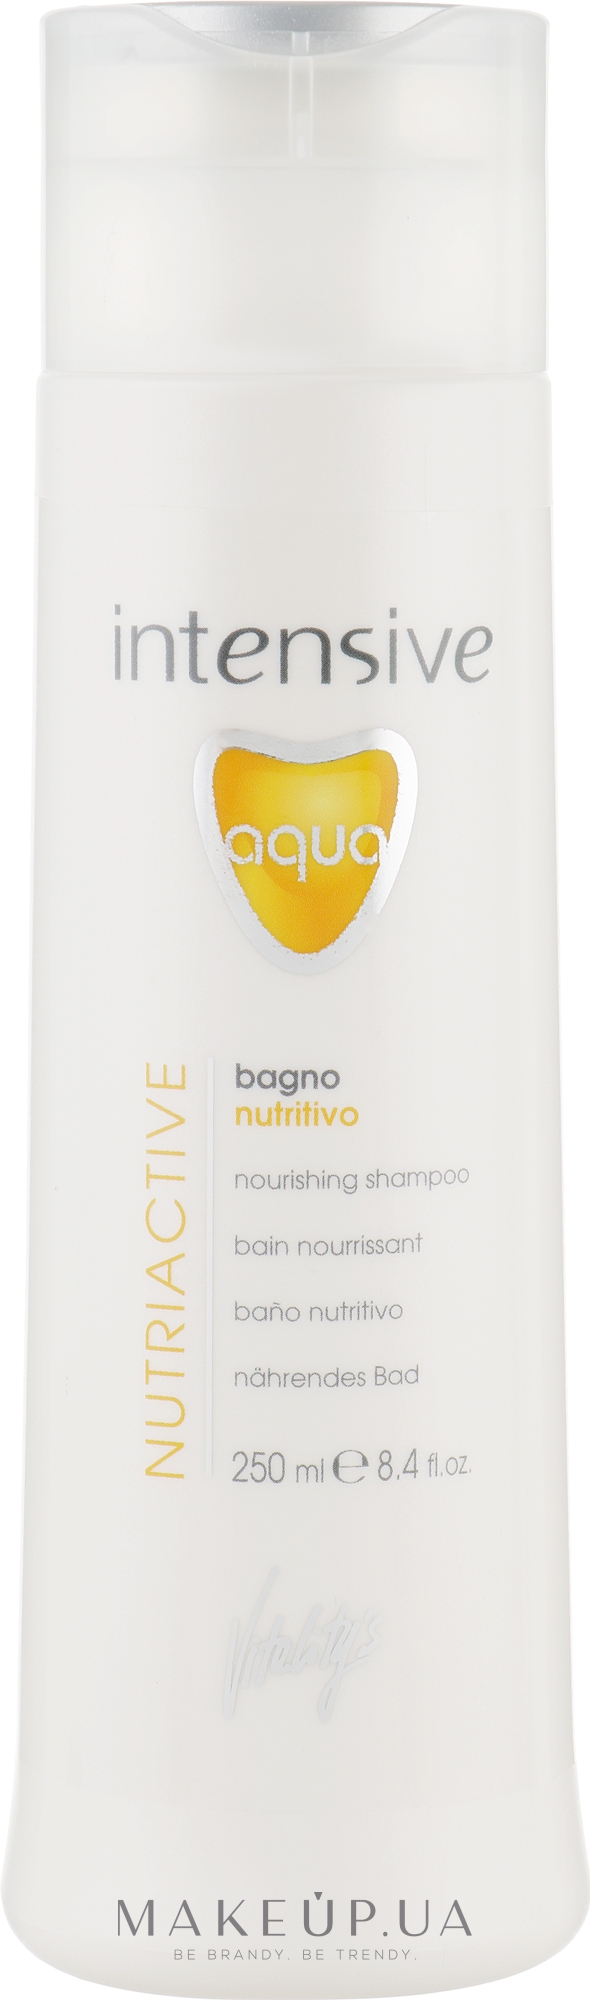 Живильний шампунь для сухого волосся - vitality's Intensive Aqua Nourishing Shampoo — фото 250ml